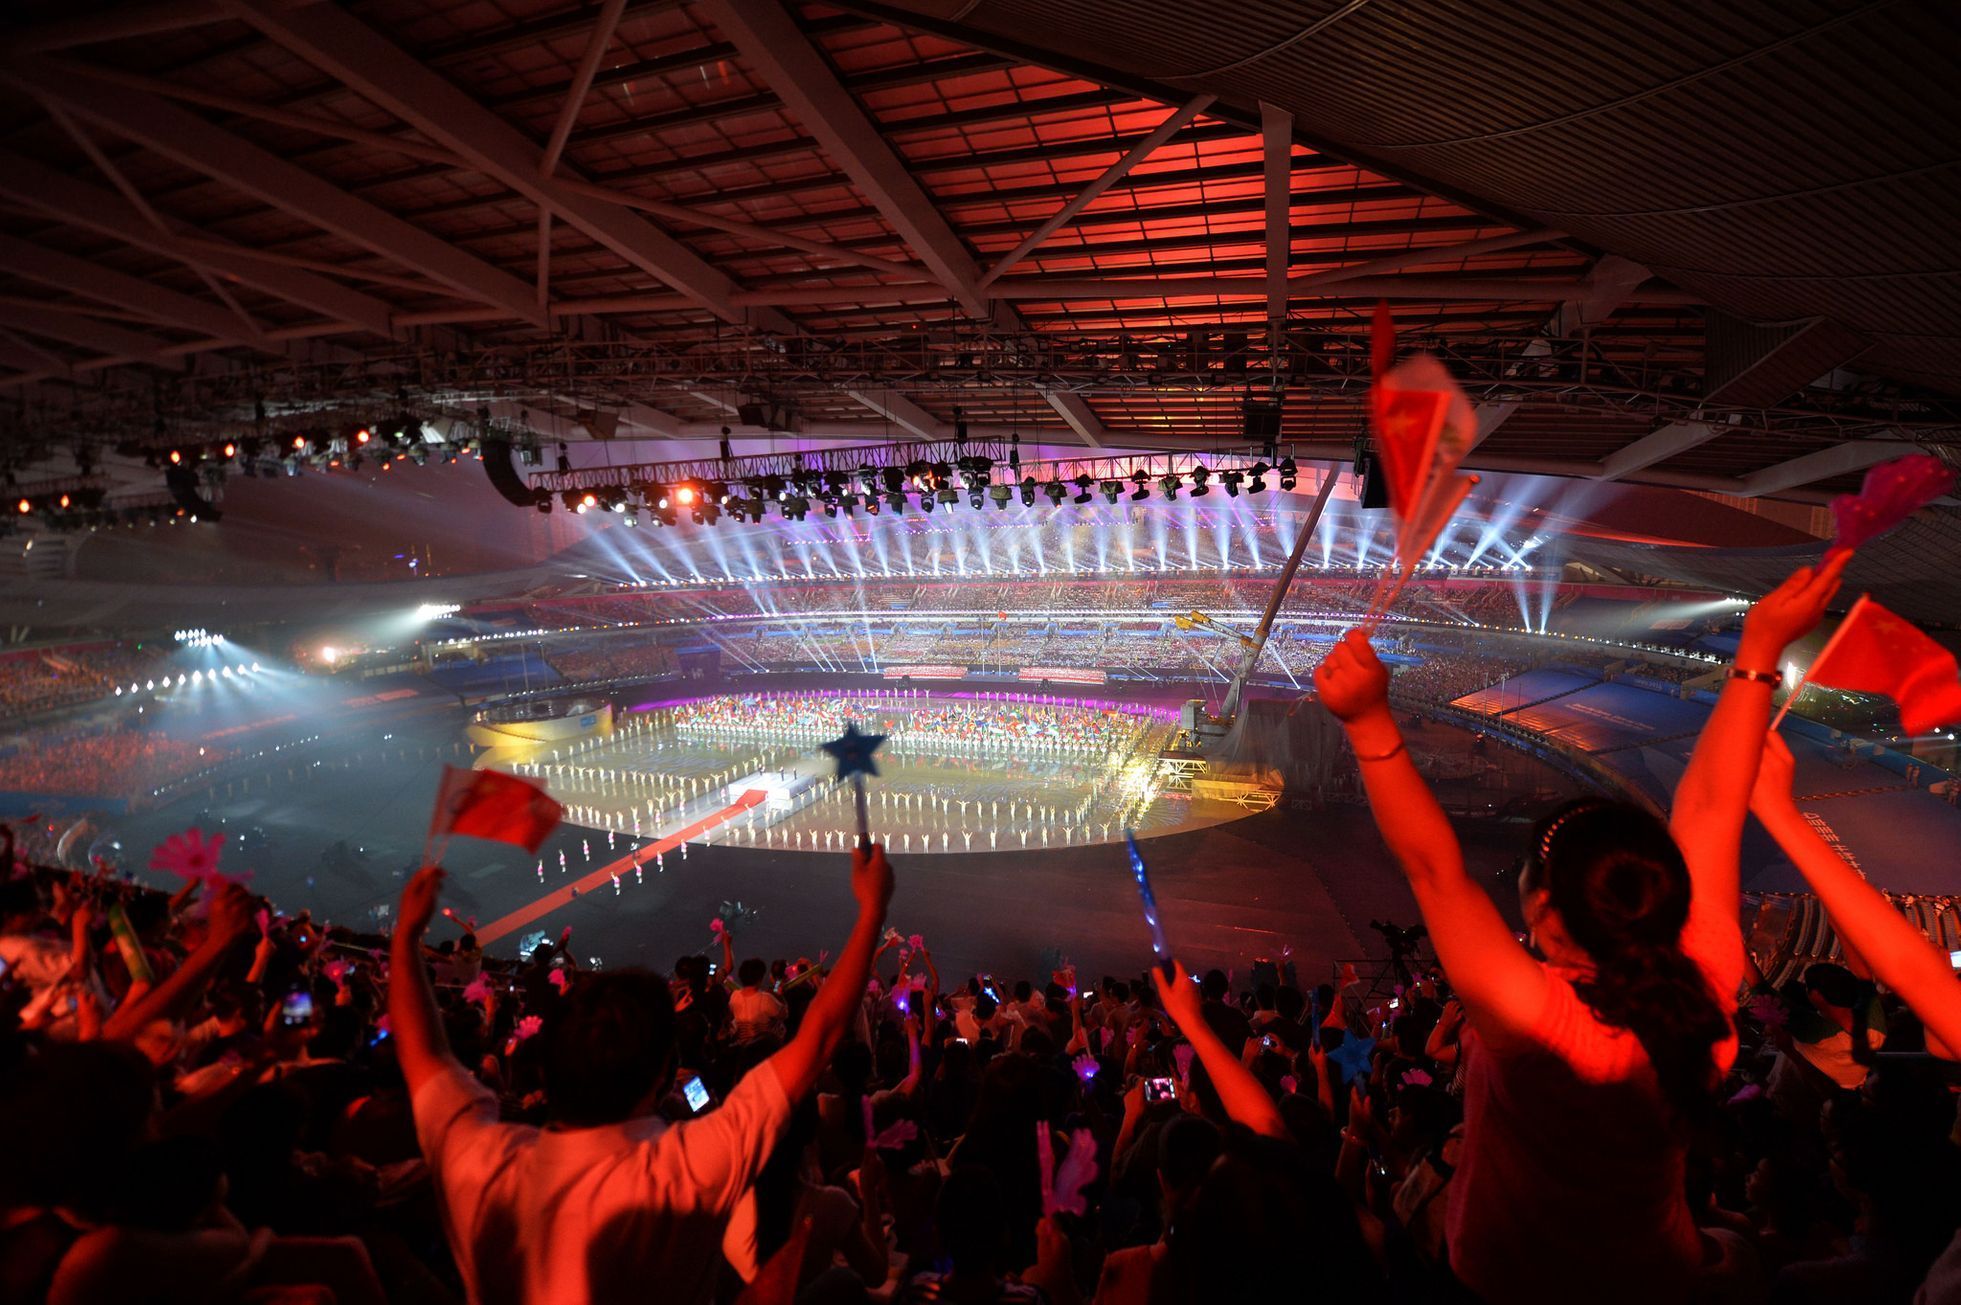 Olympiáda mládeže 2014 v Naningu